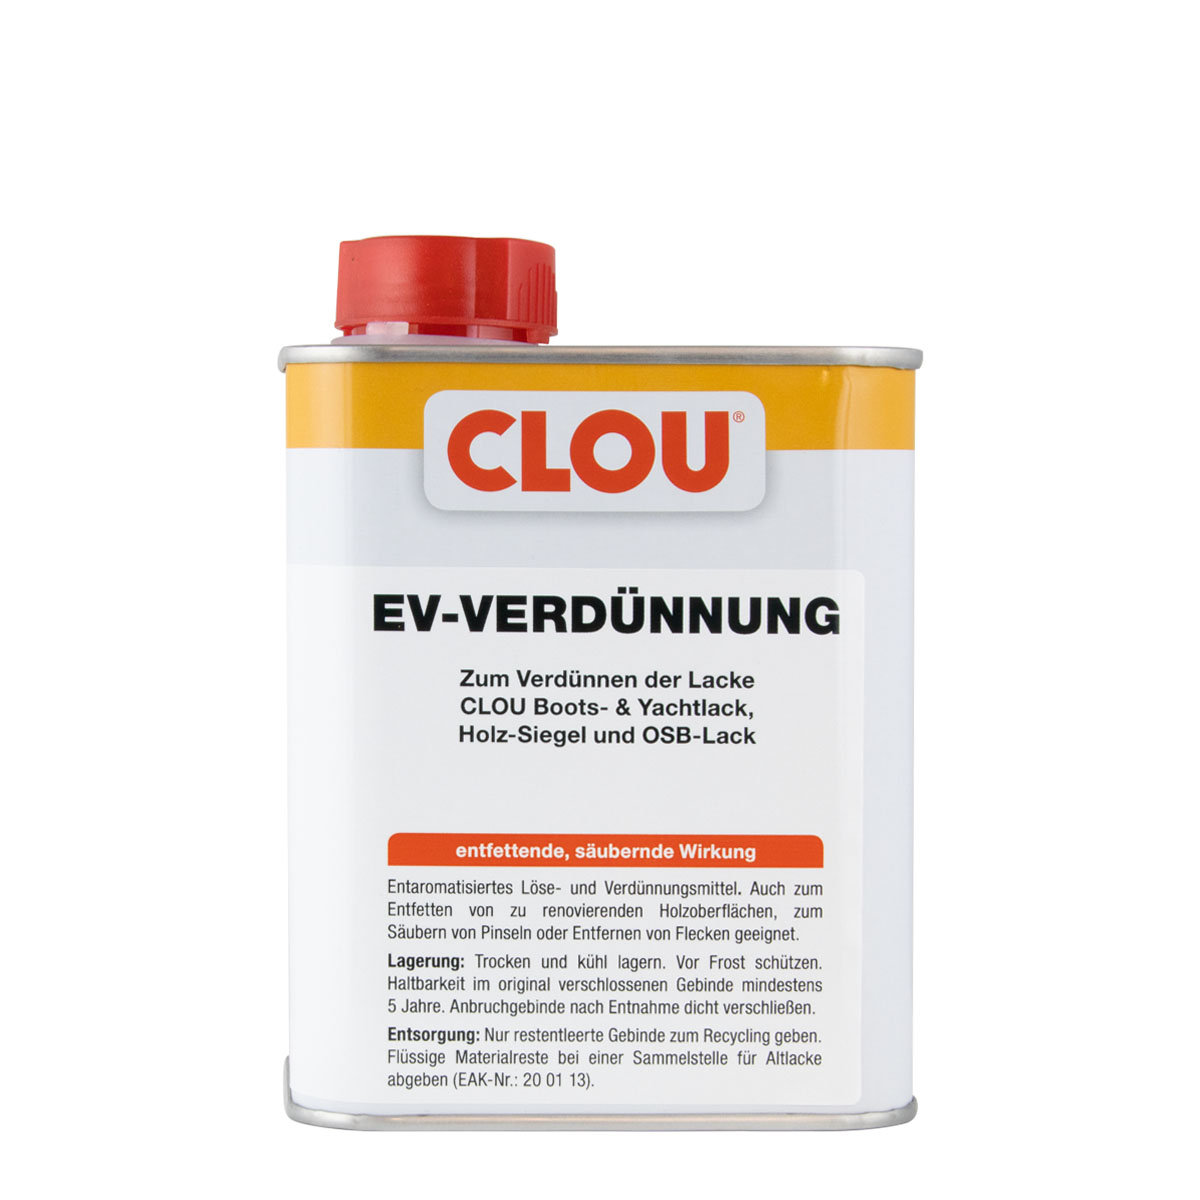 Clou_EV-Verduennung_750ml_gross